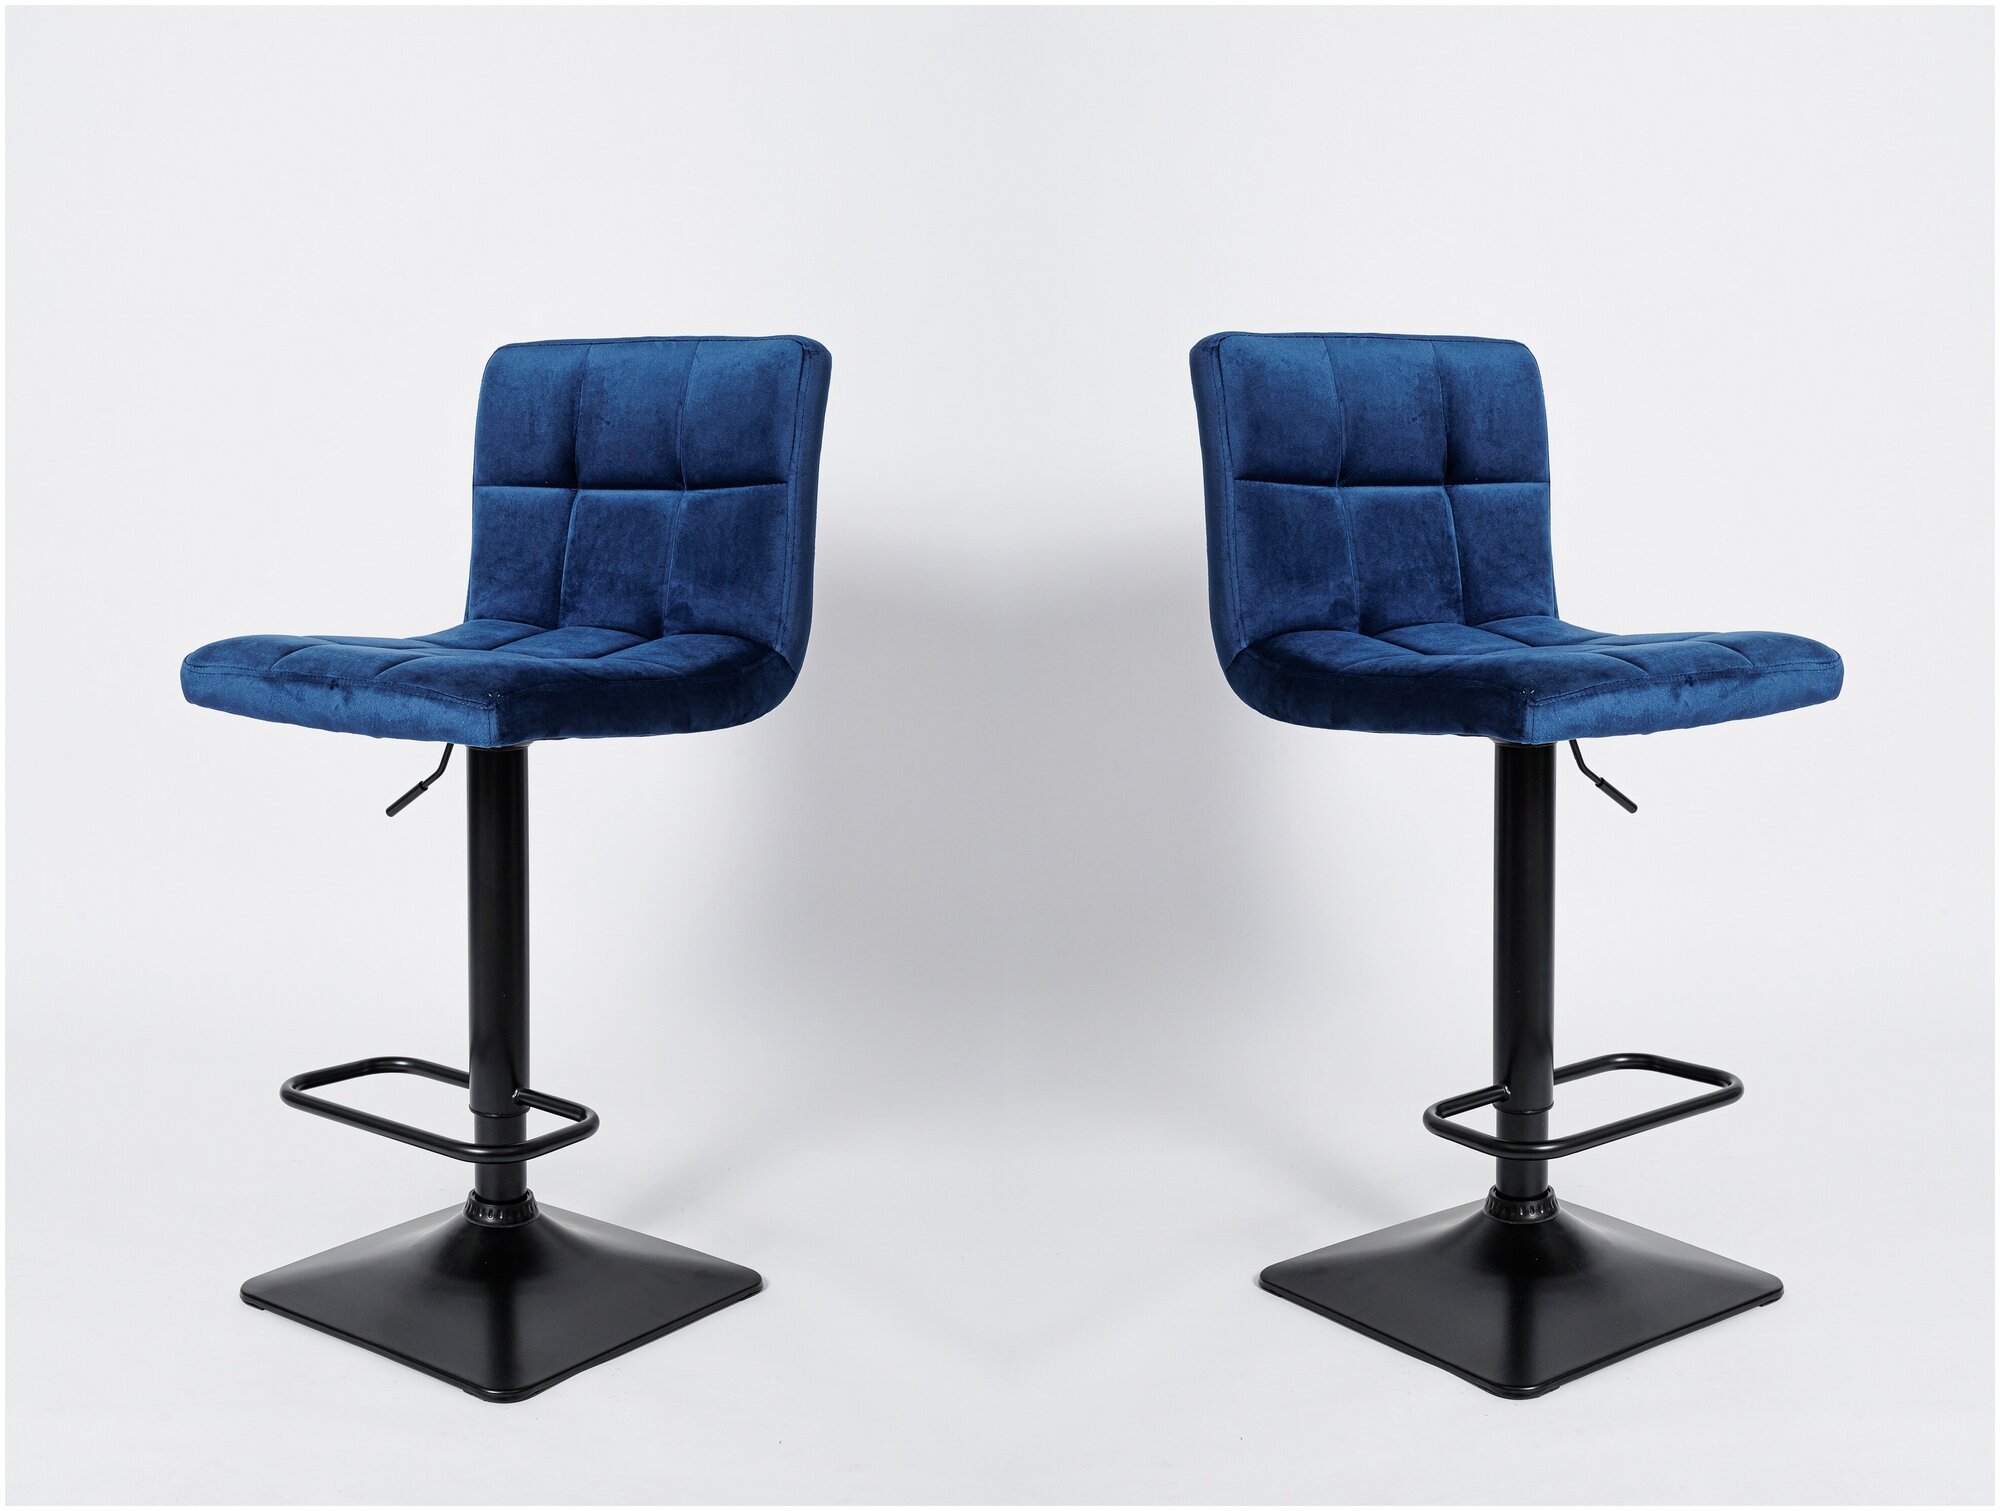 Комплект из 2-х барных стульев BN 1012-1 RQ синий вельвет G-062-49